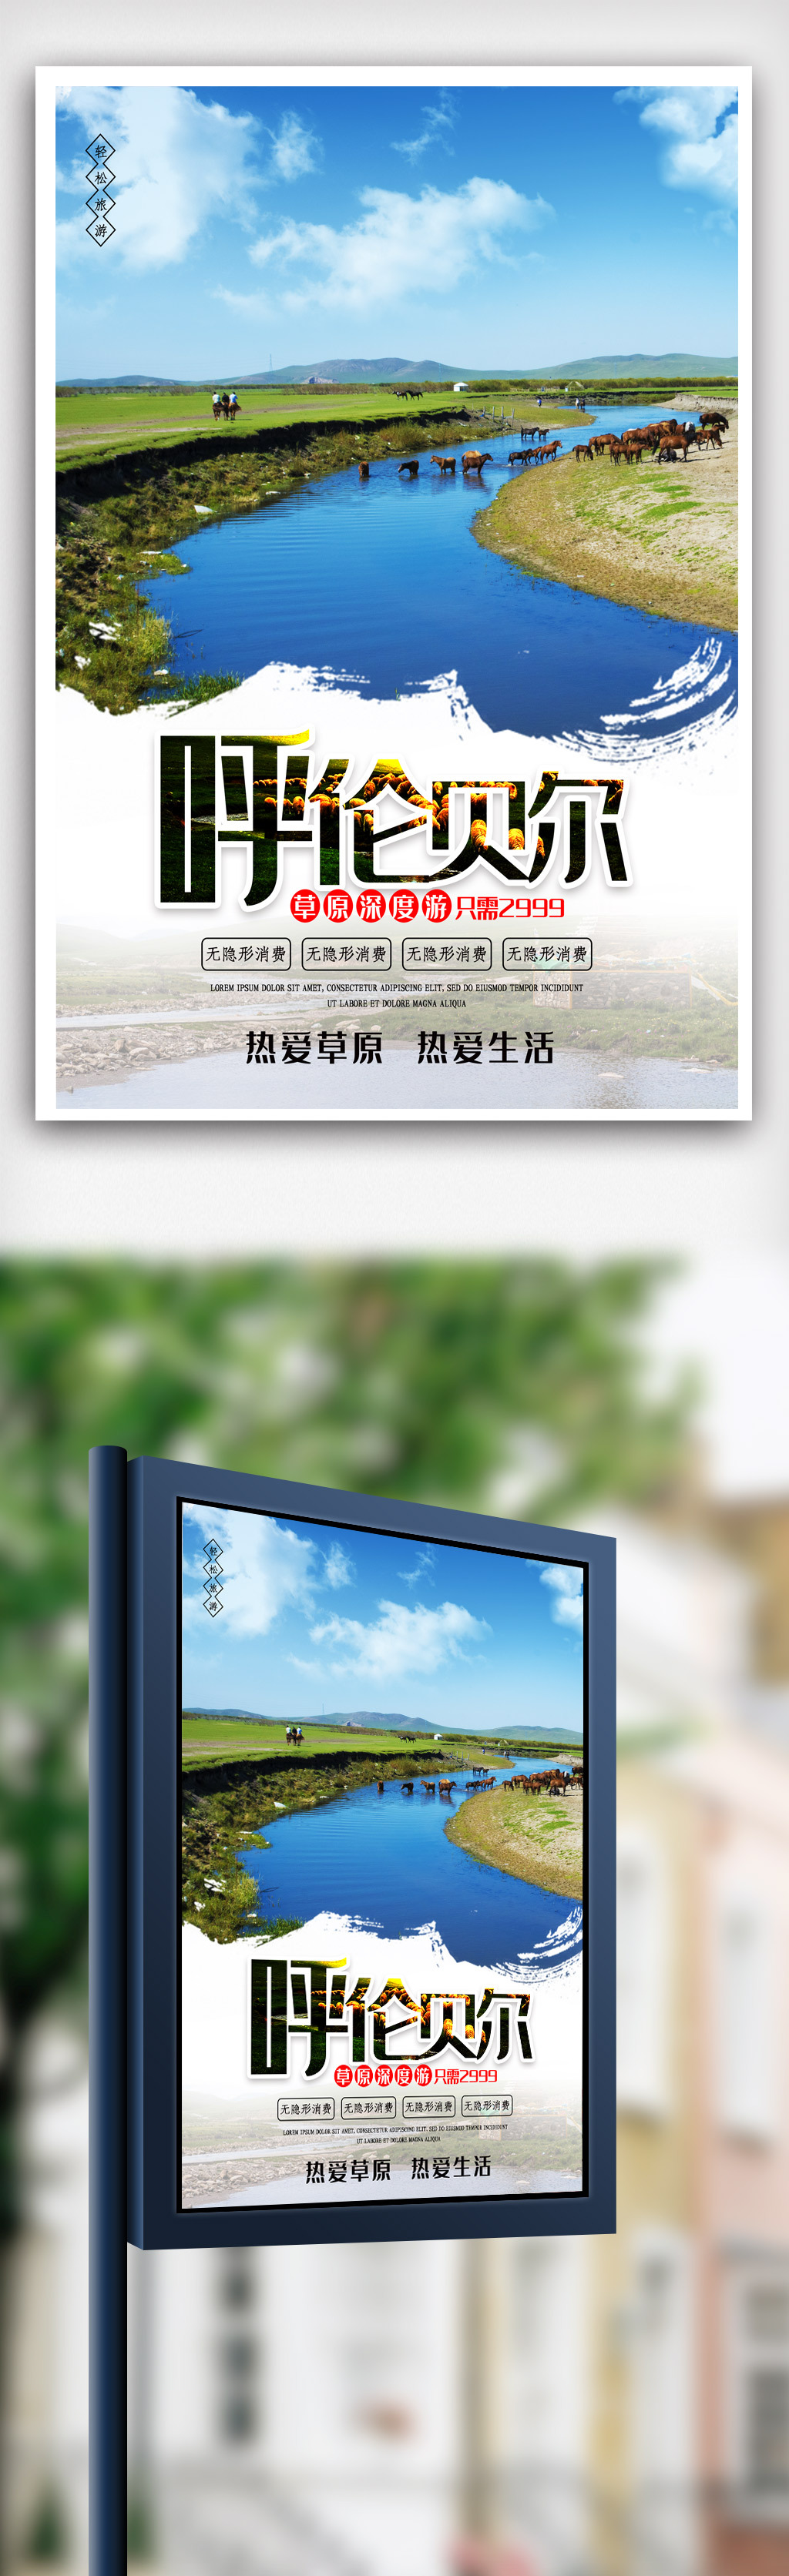 呼伦贝尓大草原旅游宣传海报模版图片